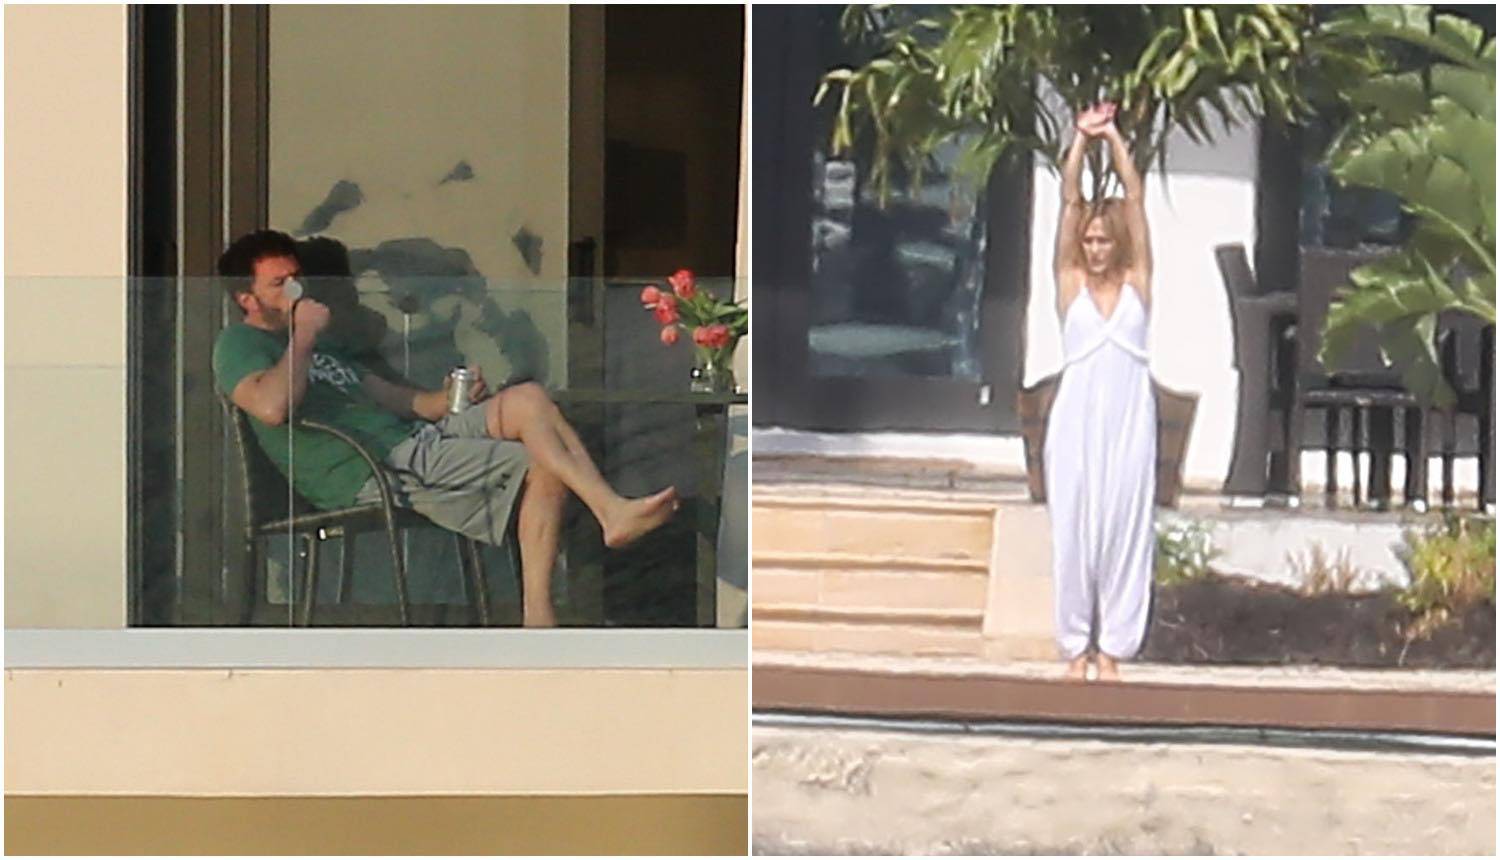 Burna noć? J.Lo se razgibava, a Affleck na balkonu pije i puši